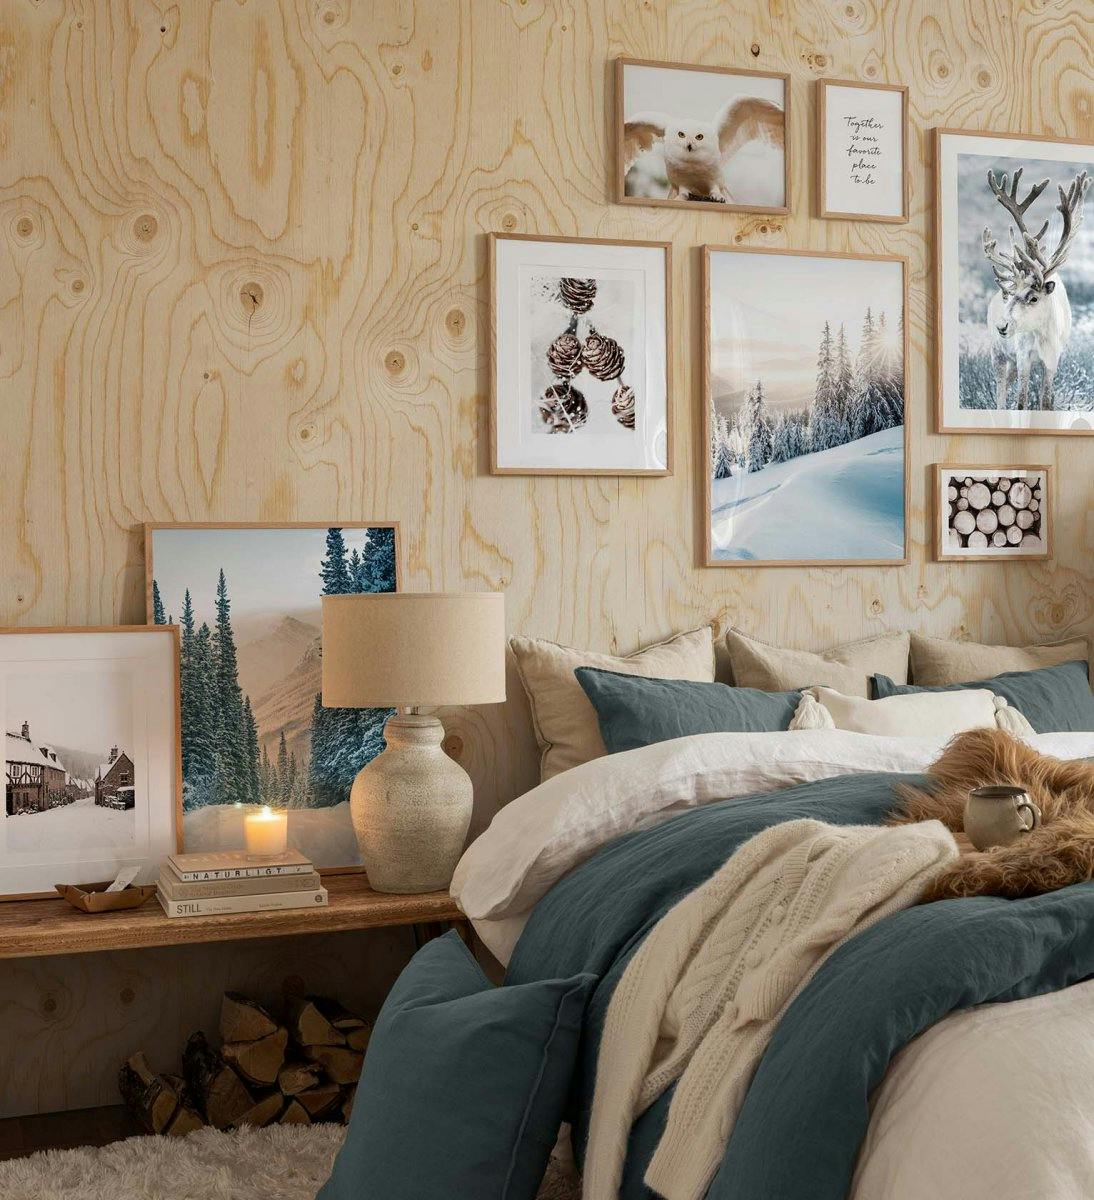 Galeriewand mit Winterpostern in Weiß, Braun und Grün, kombiniert mit Postern mit Zitaten in Eichenrahmen für das Schlafzimmer